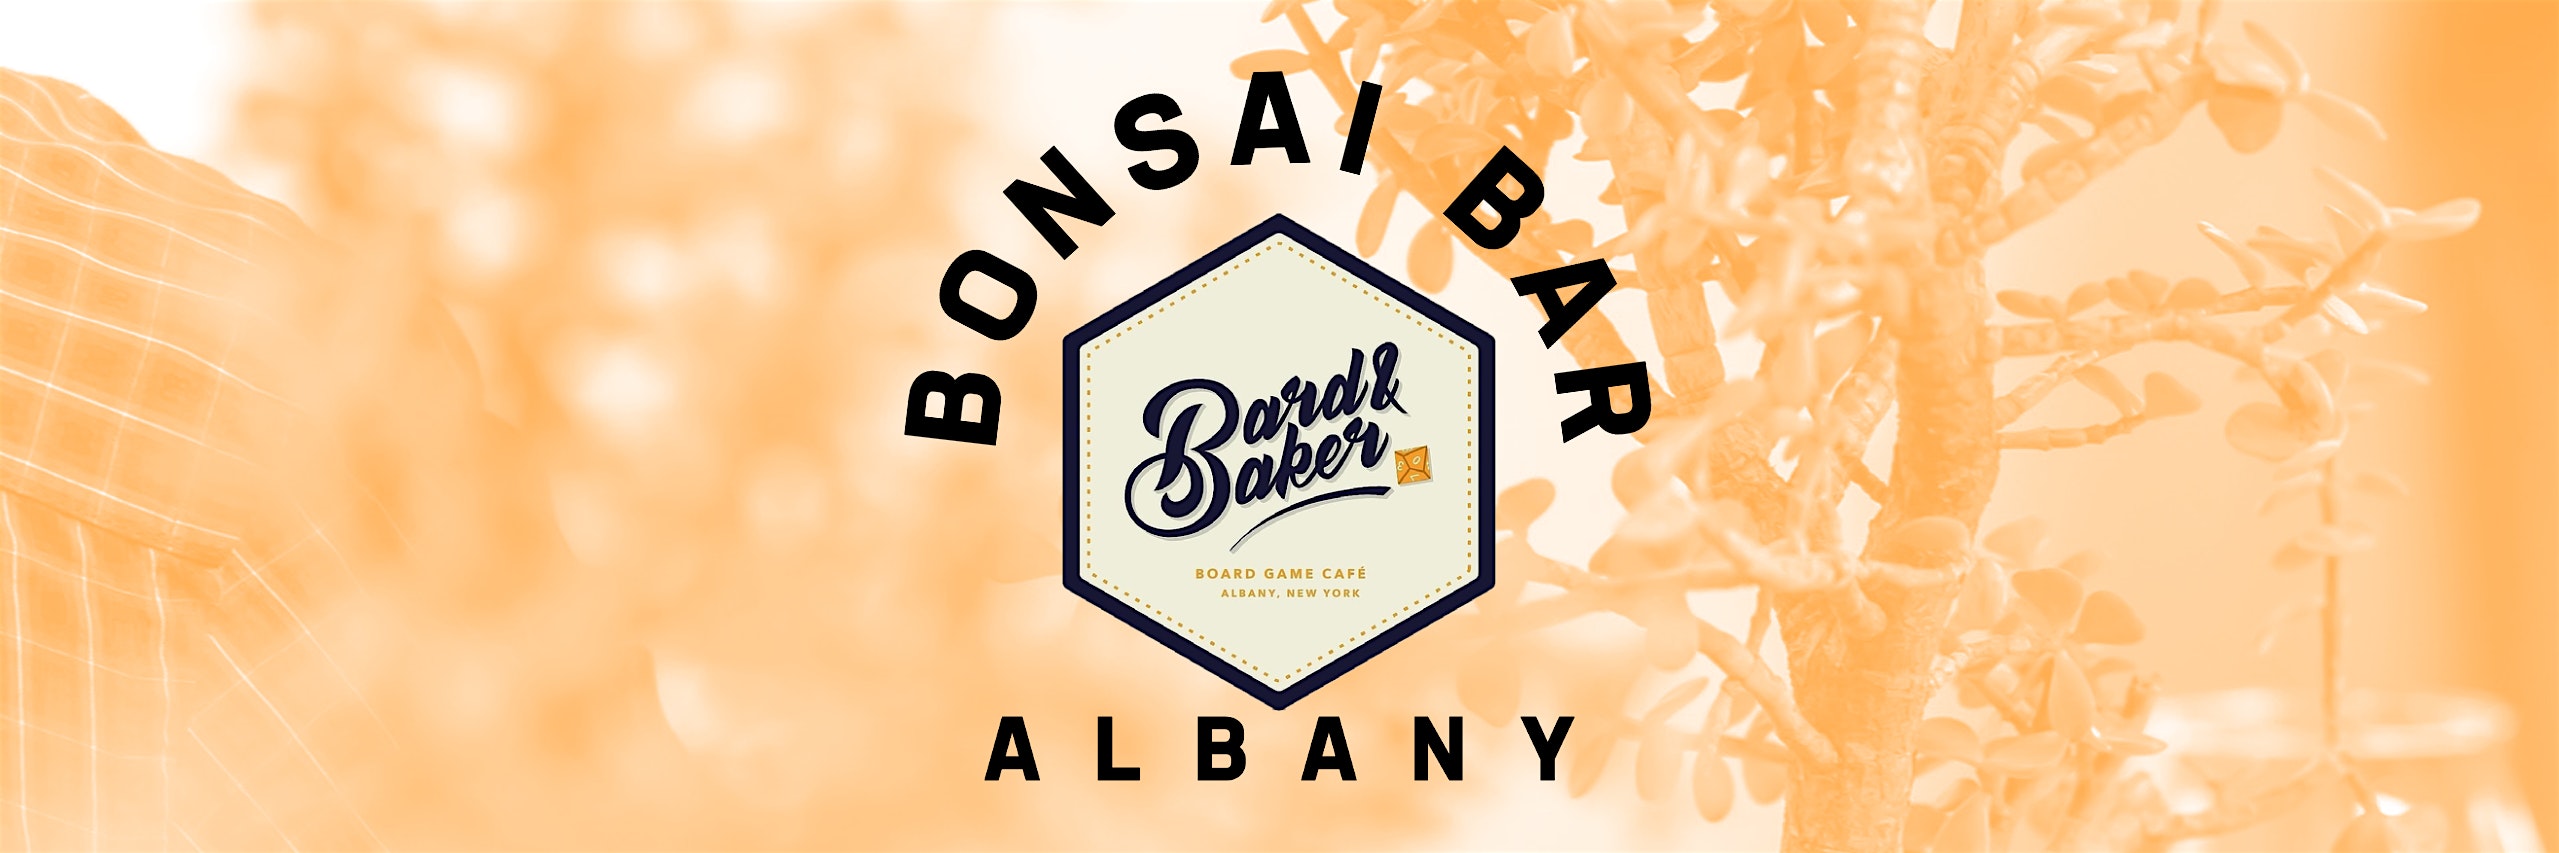 Bonsai Bar @ Bard & Baker: Board Game Café – Albany